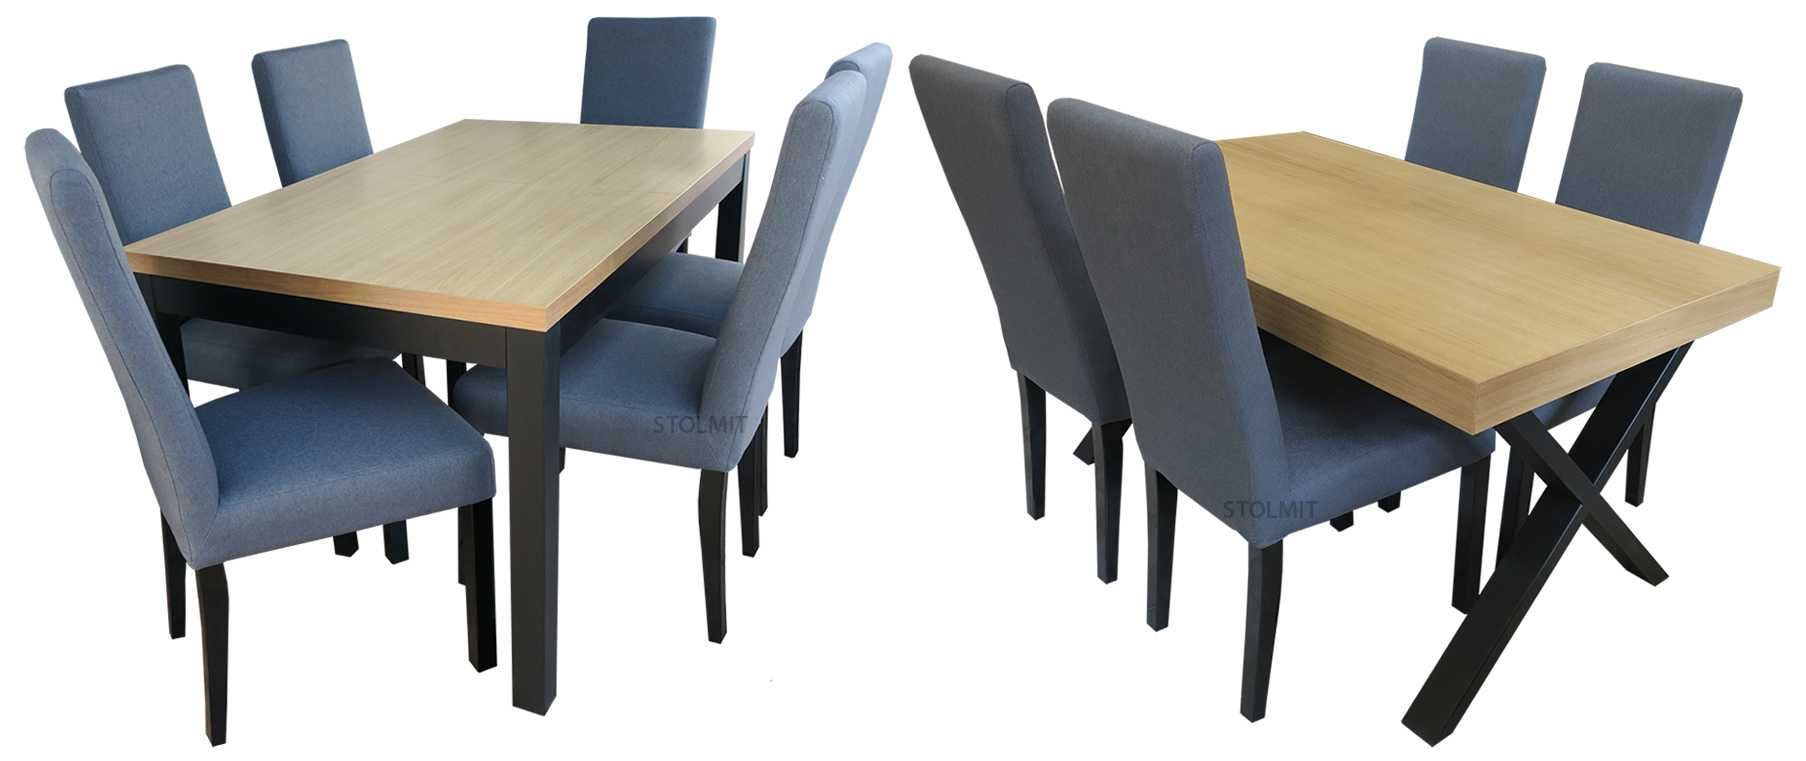 Kwadratowy rozkładany stół 4 krzesła dąb wymiar wysyłka polska